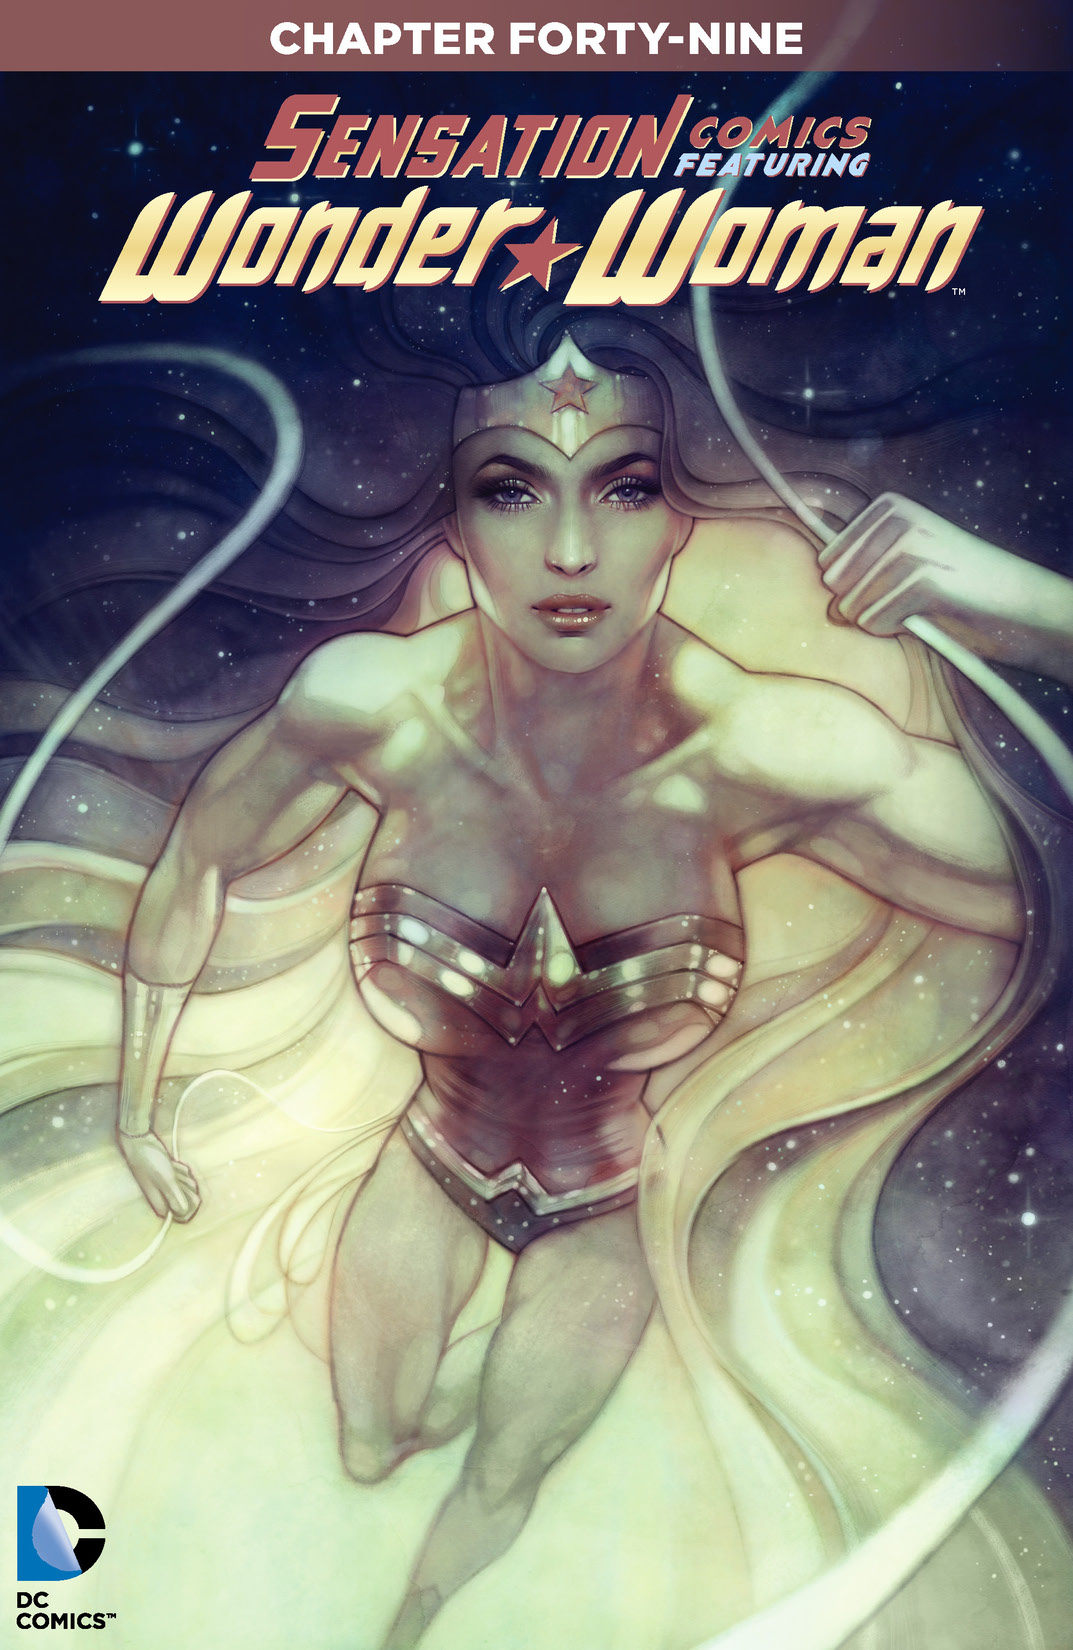 Sensation Comics Featuring Wonder Woman #49 preview images